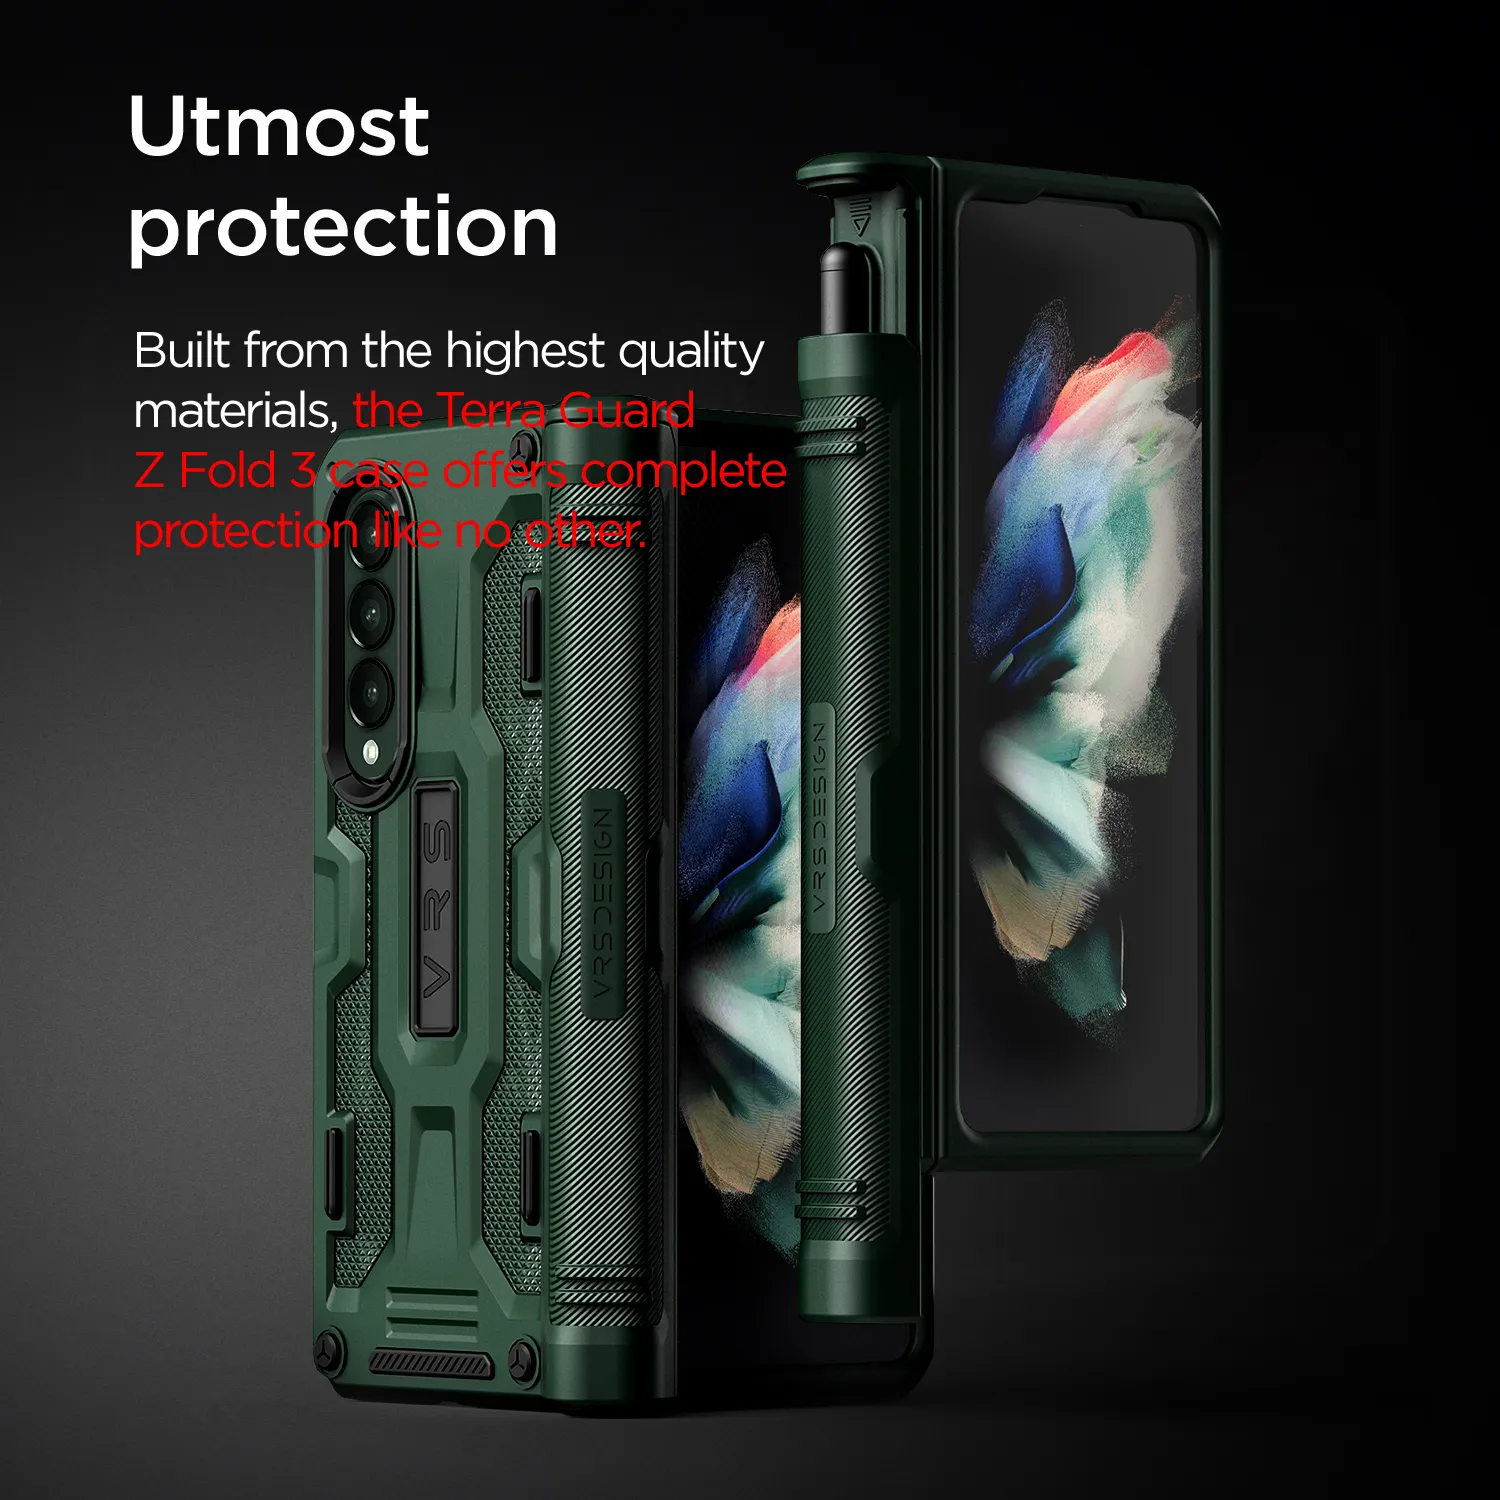 เคส VRS รุ่น Terra Guard S - Samsung Galaxy Z Fold 3 - สี Dark Green